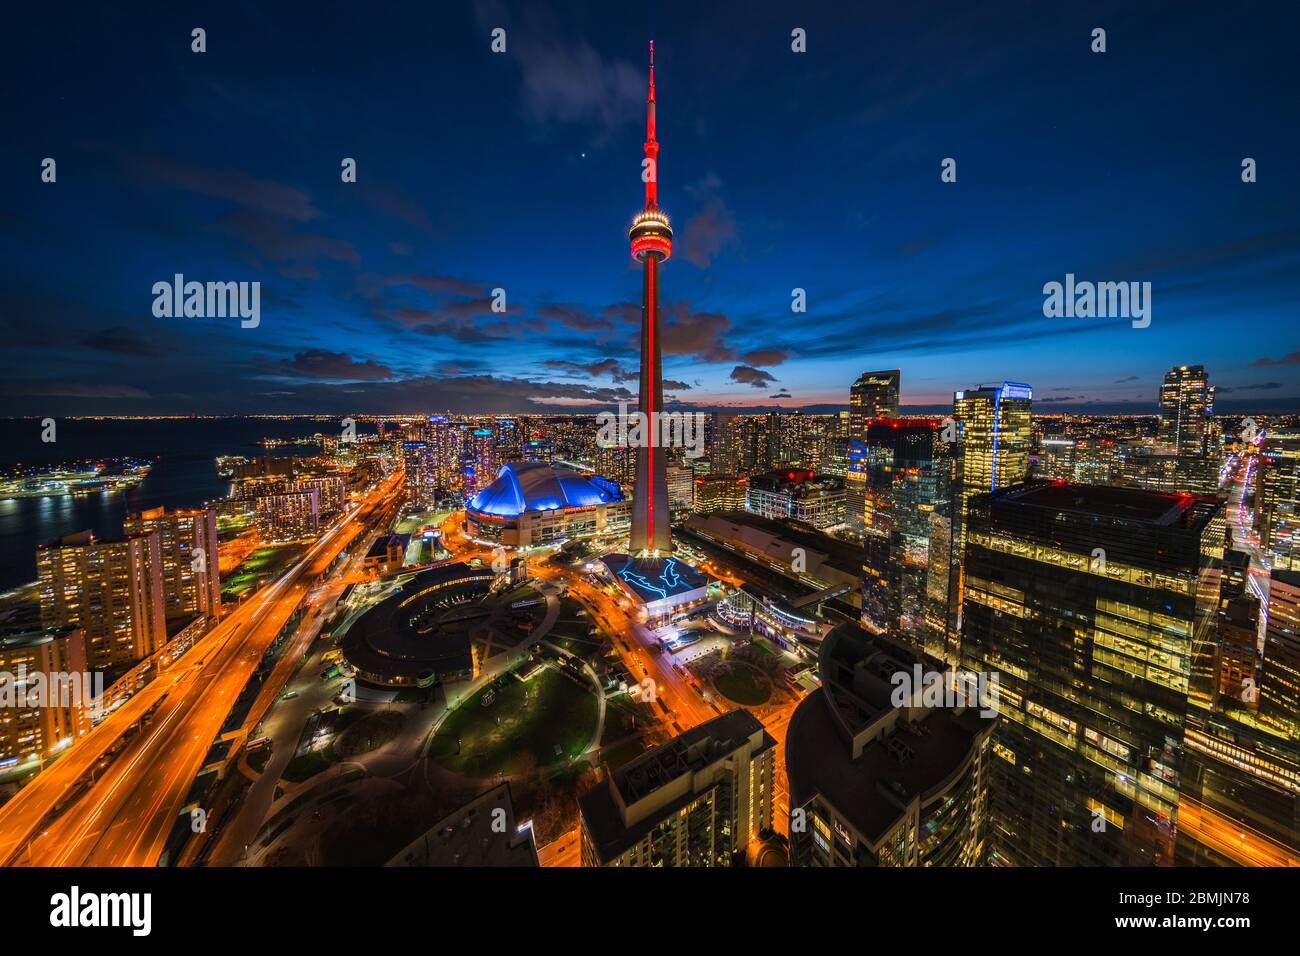 Toronto, Ontario, Canadá, vista panorámica del paisaje urbano de Toronto, incluida la torre CN, un punto de referencia arquitectónico, iluminada por la noche. Foto de stock